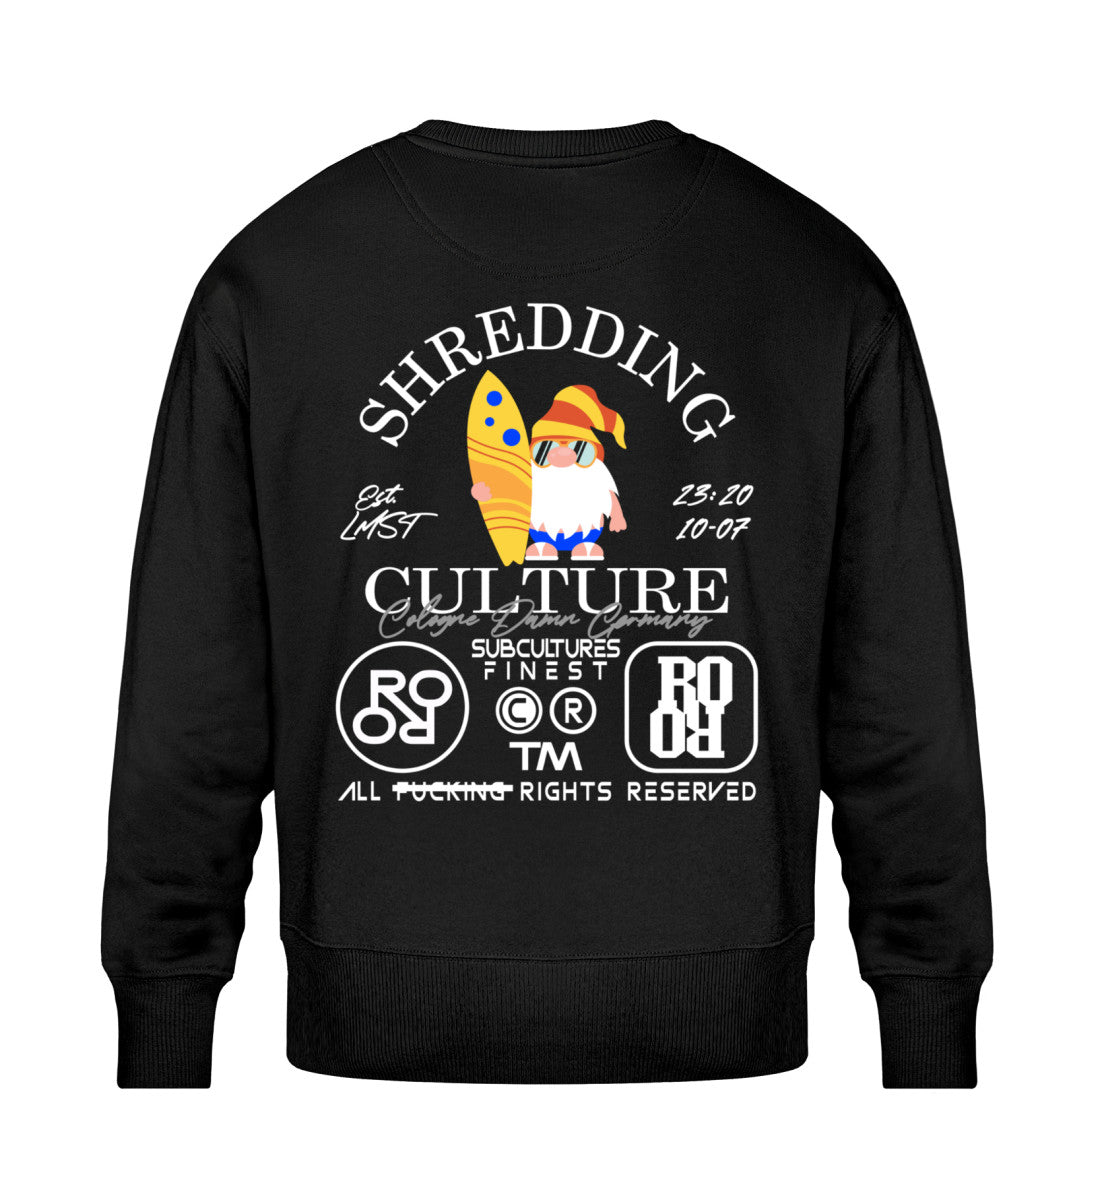 Schwarzes Sweatshirt Unisex für Frauen und Männer bedruckt mit dem Design der Roger Rockawoo Kollektion Surf shredding Culture Community